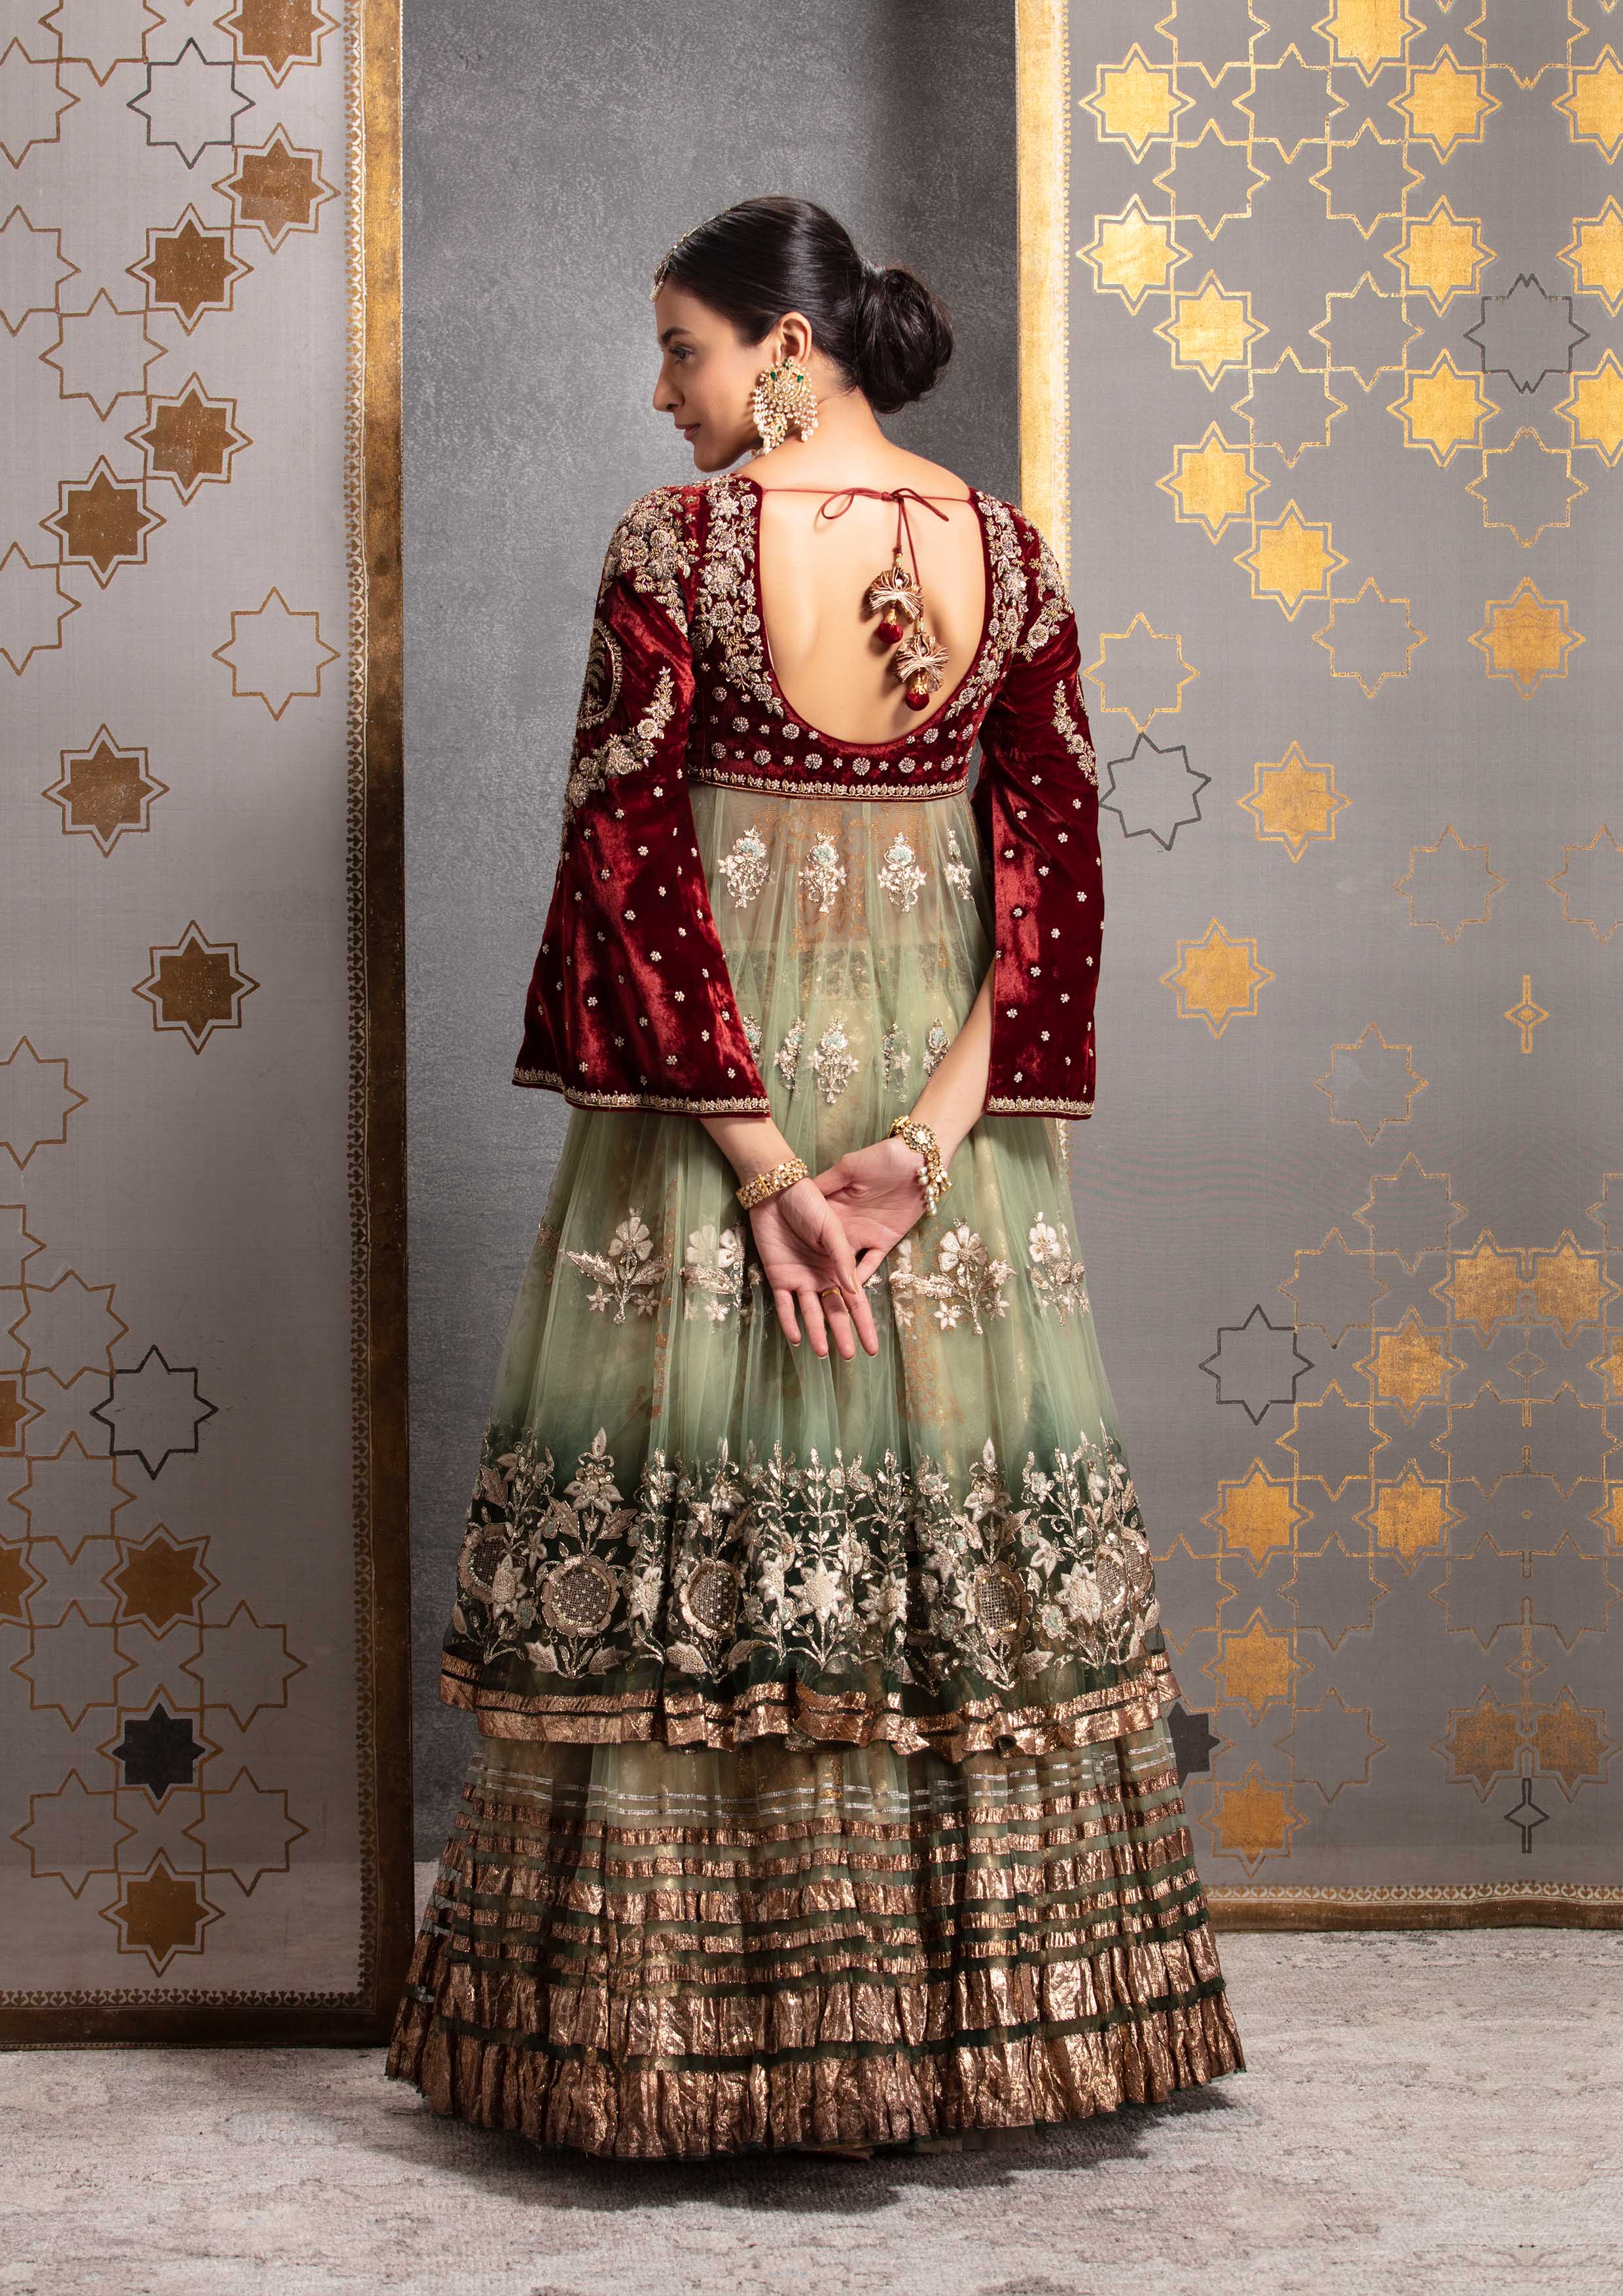 designer firozi indowestern bajirao mastani style lehenga suit avaiable  indiantrendz store pathankot. … | Designer lehnga choli, Indian fashion,  Formal dresses long